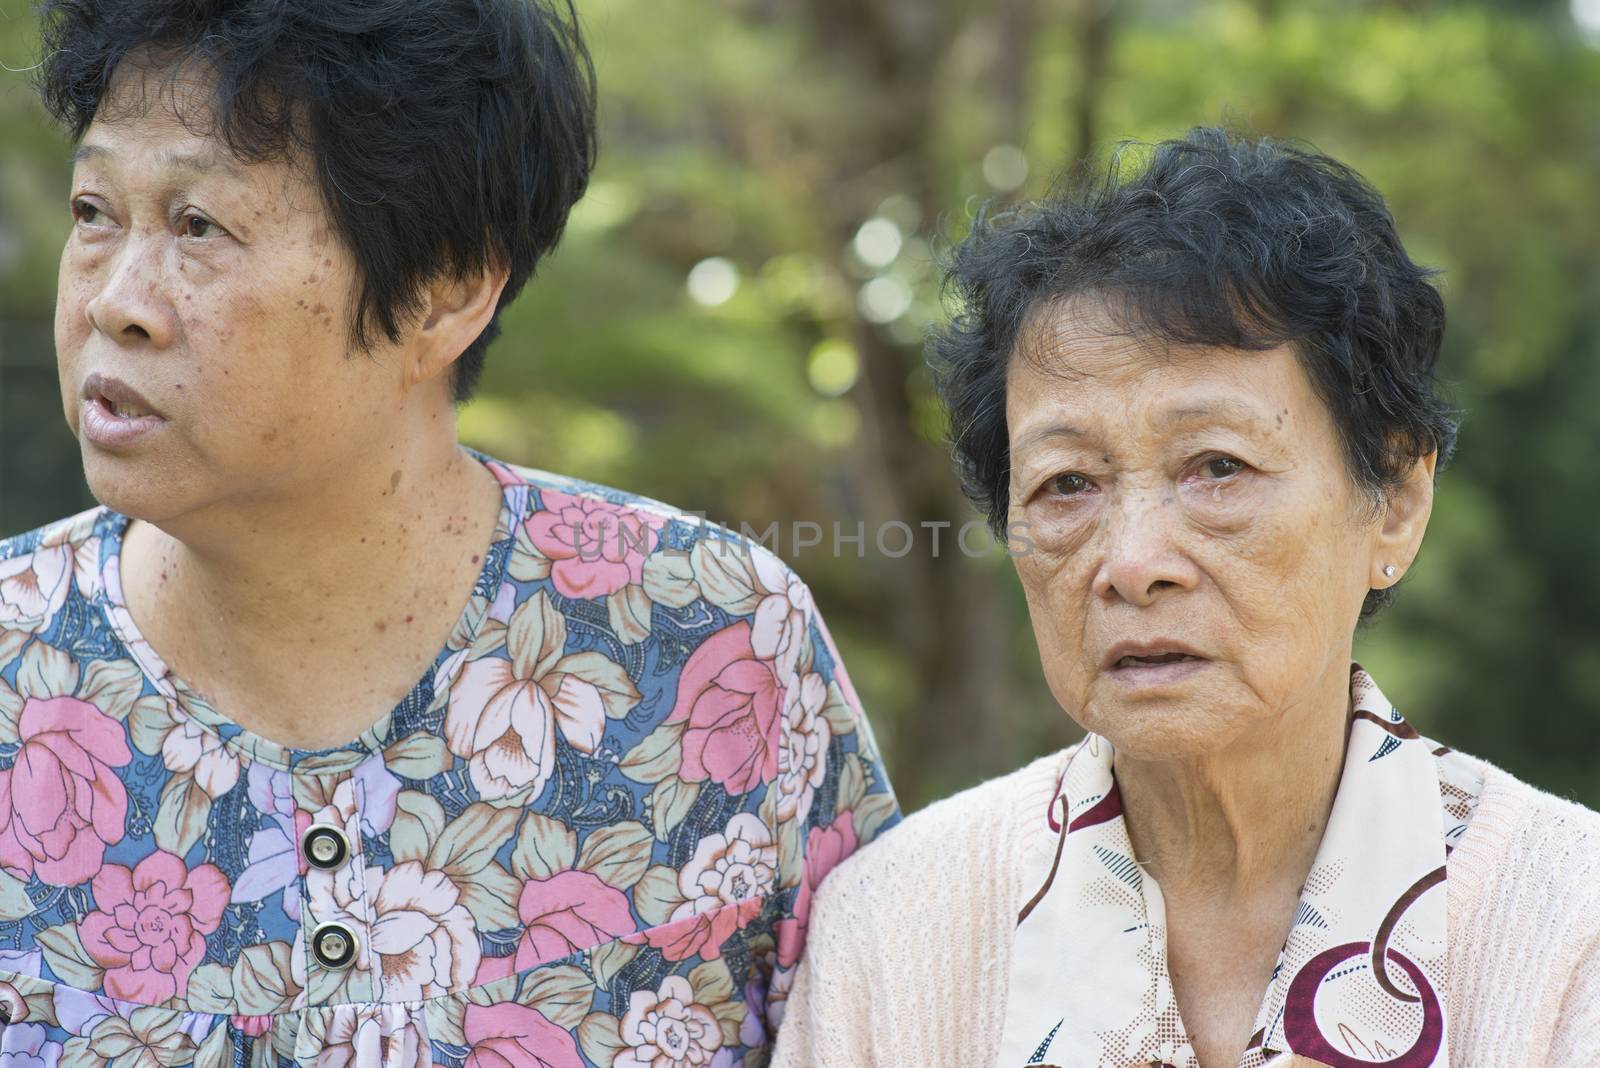 Asian elderly women talking at outdoor by szefei